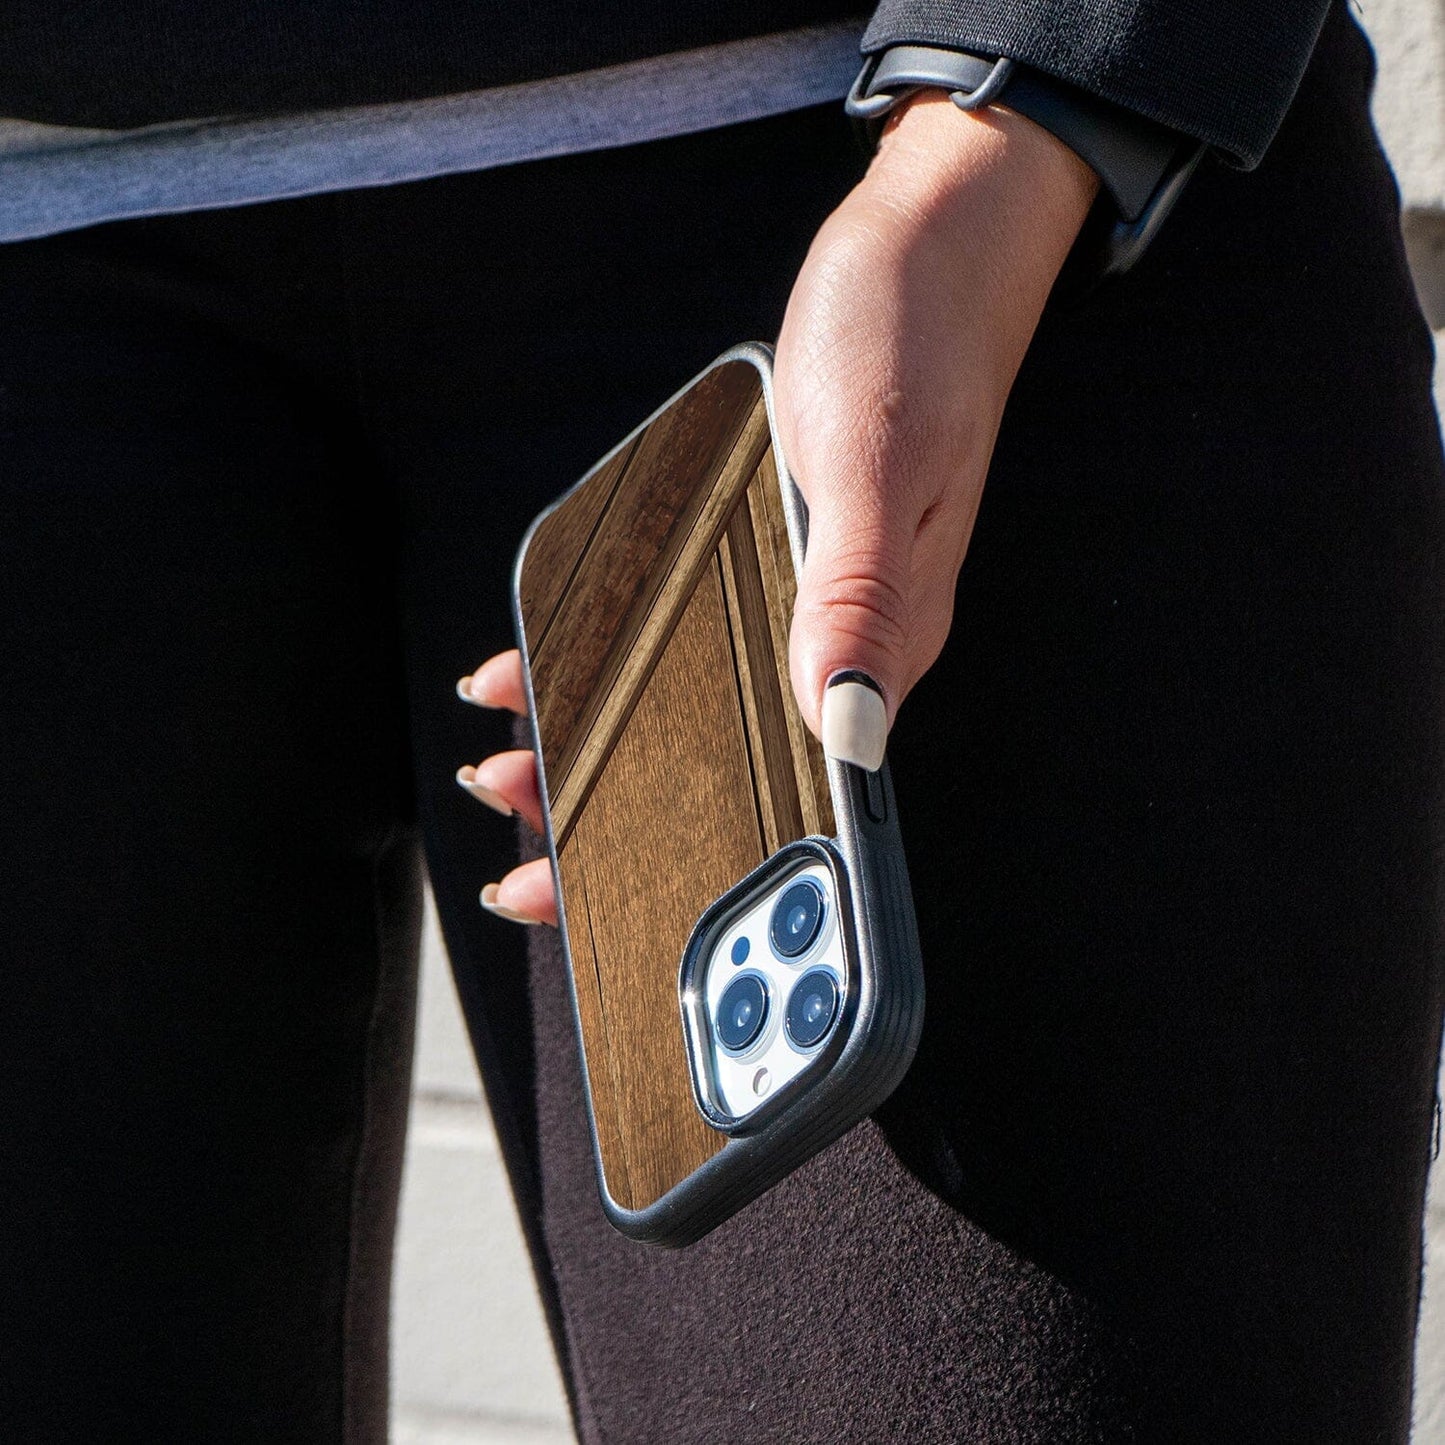 MagSafe iPhone 13 Pro Wood Case